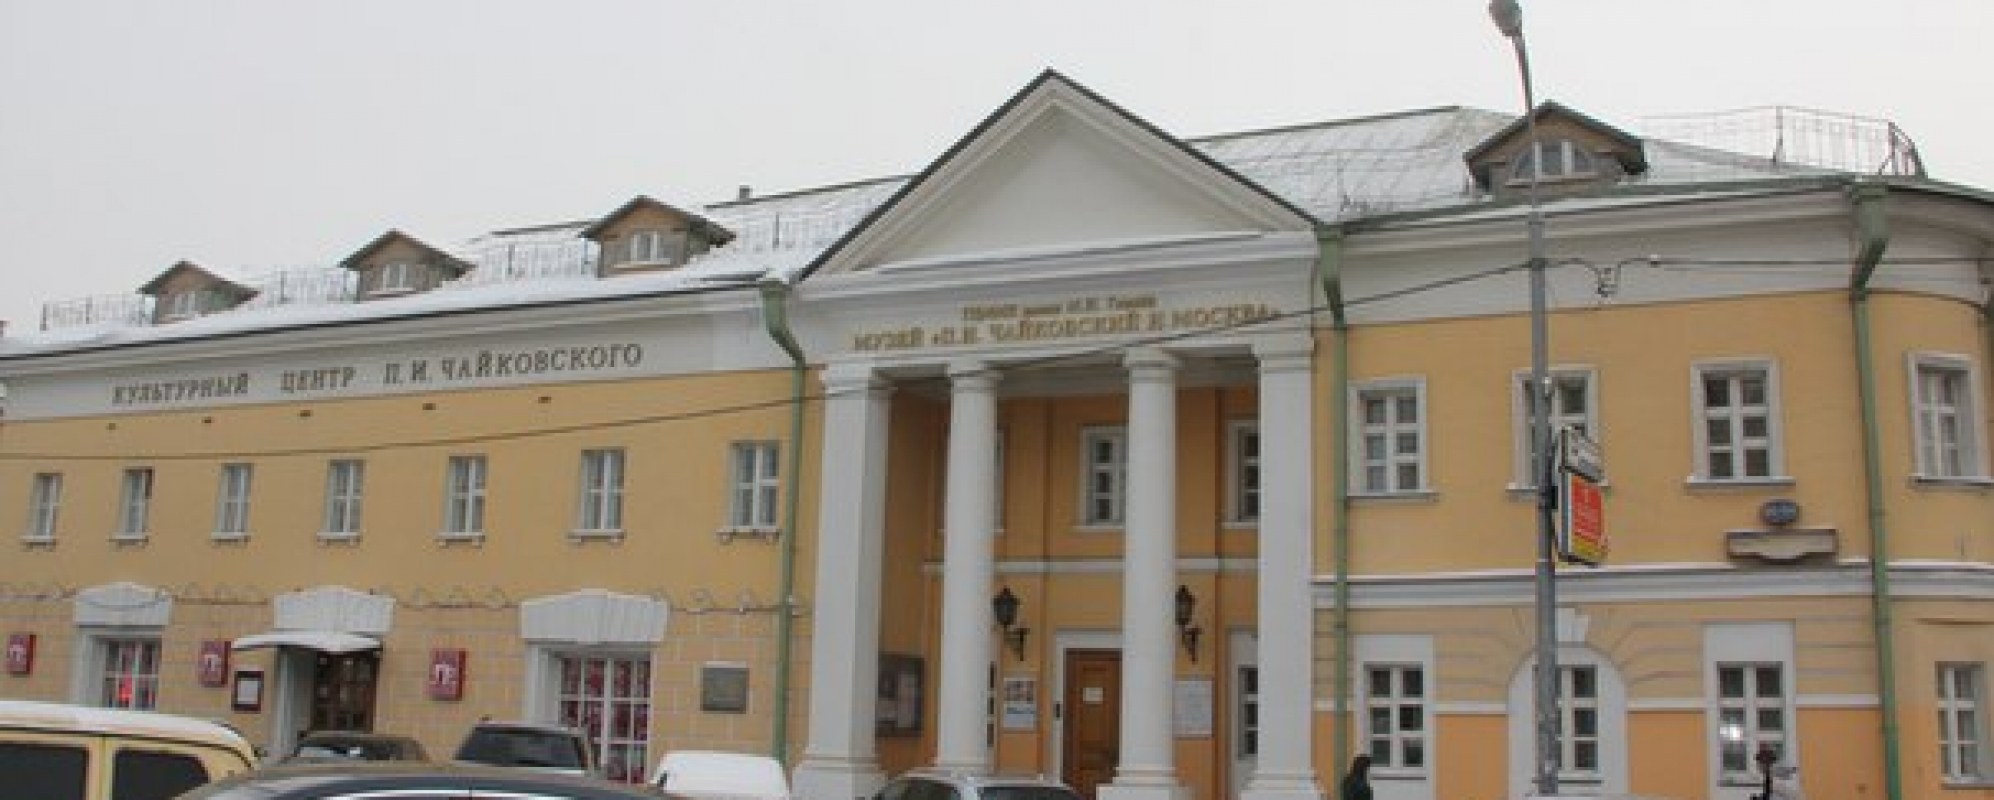 Фотографии музея Музей П. И. Чайковский и Москва